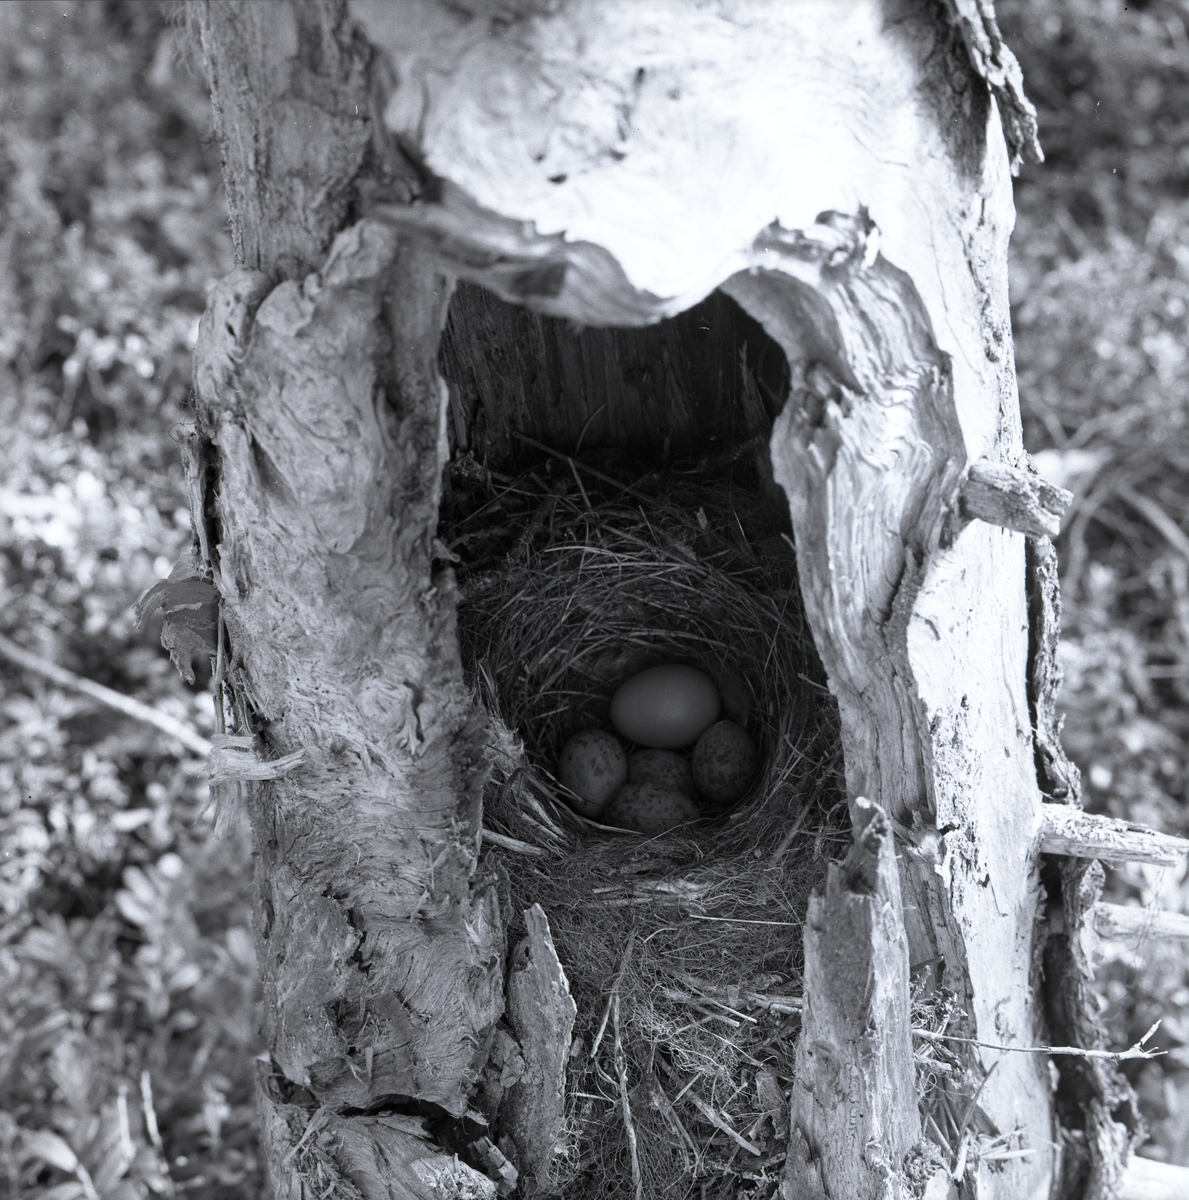 Ett fågelbo gömmer sig i den döda trädstammen, bara några kvistar och strån sticker ut från öppningen. I boet ligger fem fågelägg och ett av dessa är gökens ägg. Det största, enfärgade ägget har en listig gök lagt ibland den andra fågelhonans ägg.